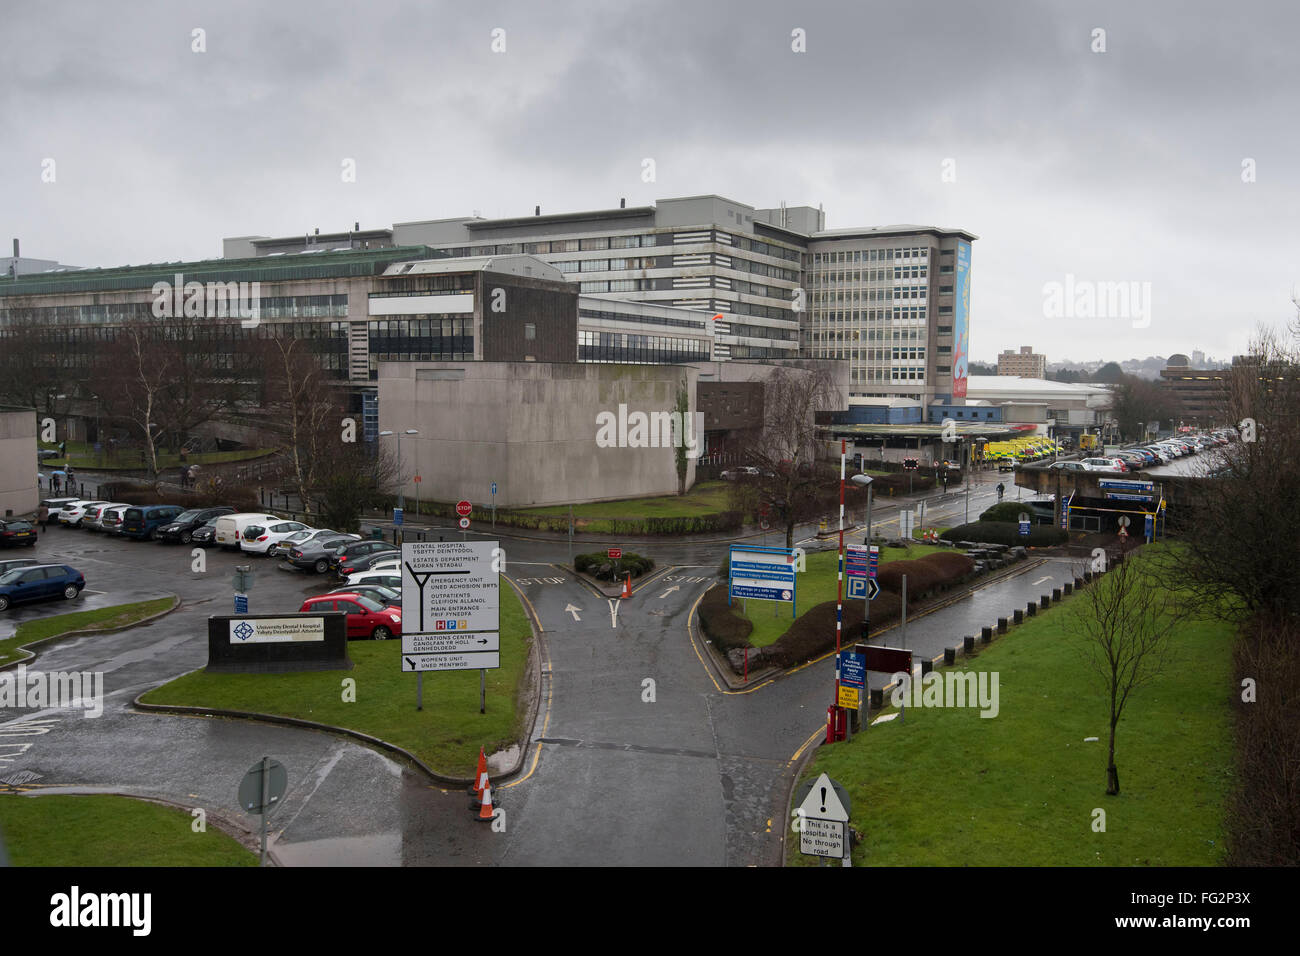 L'Hôpital universitaire du pays de Galles à Cardiff, Pays de Galles du Sud Banque D'Images